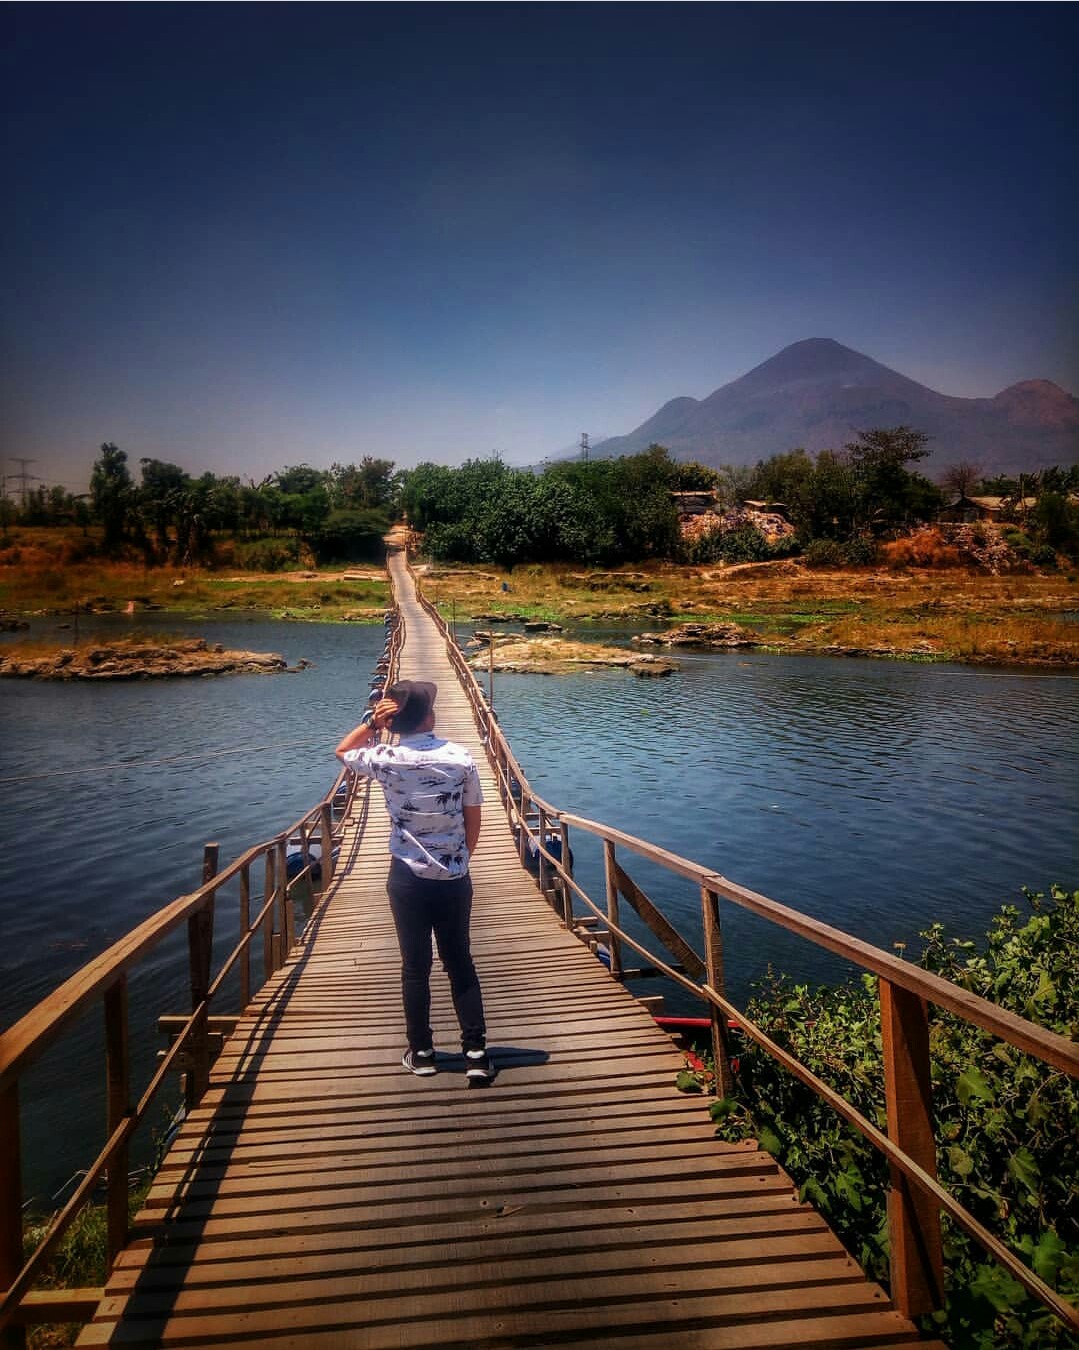 Menyeberang Sembari Mpemandangan Alam nan Indah via Instagram @frido_pranata